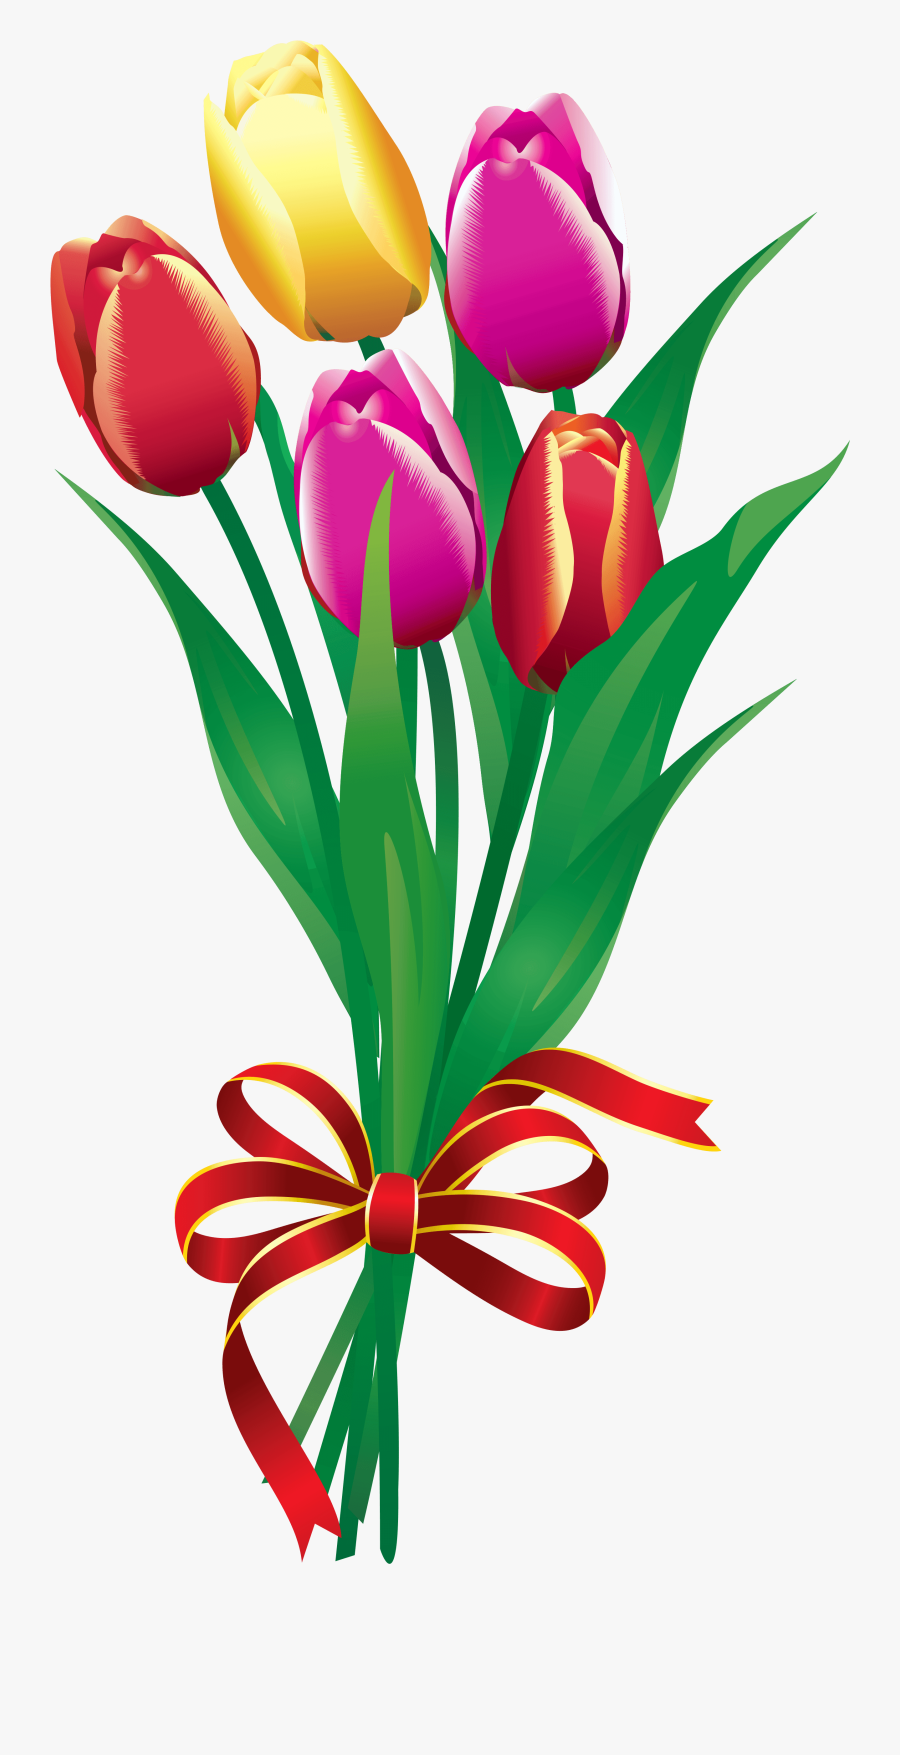 Tulip Bouquet Clipart - Bouquet Of Flowers Animated, Transparent Clipart